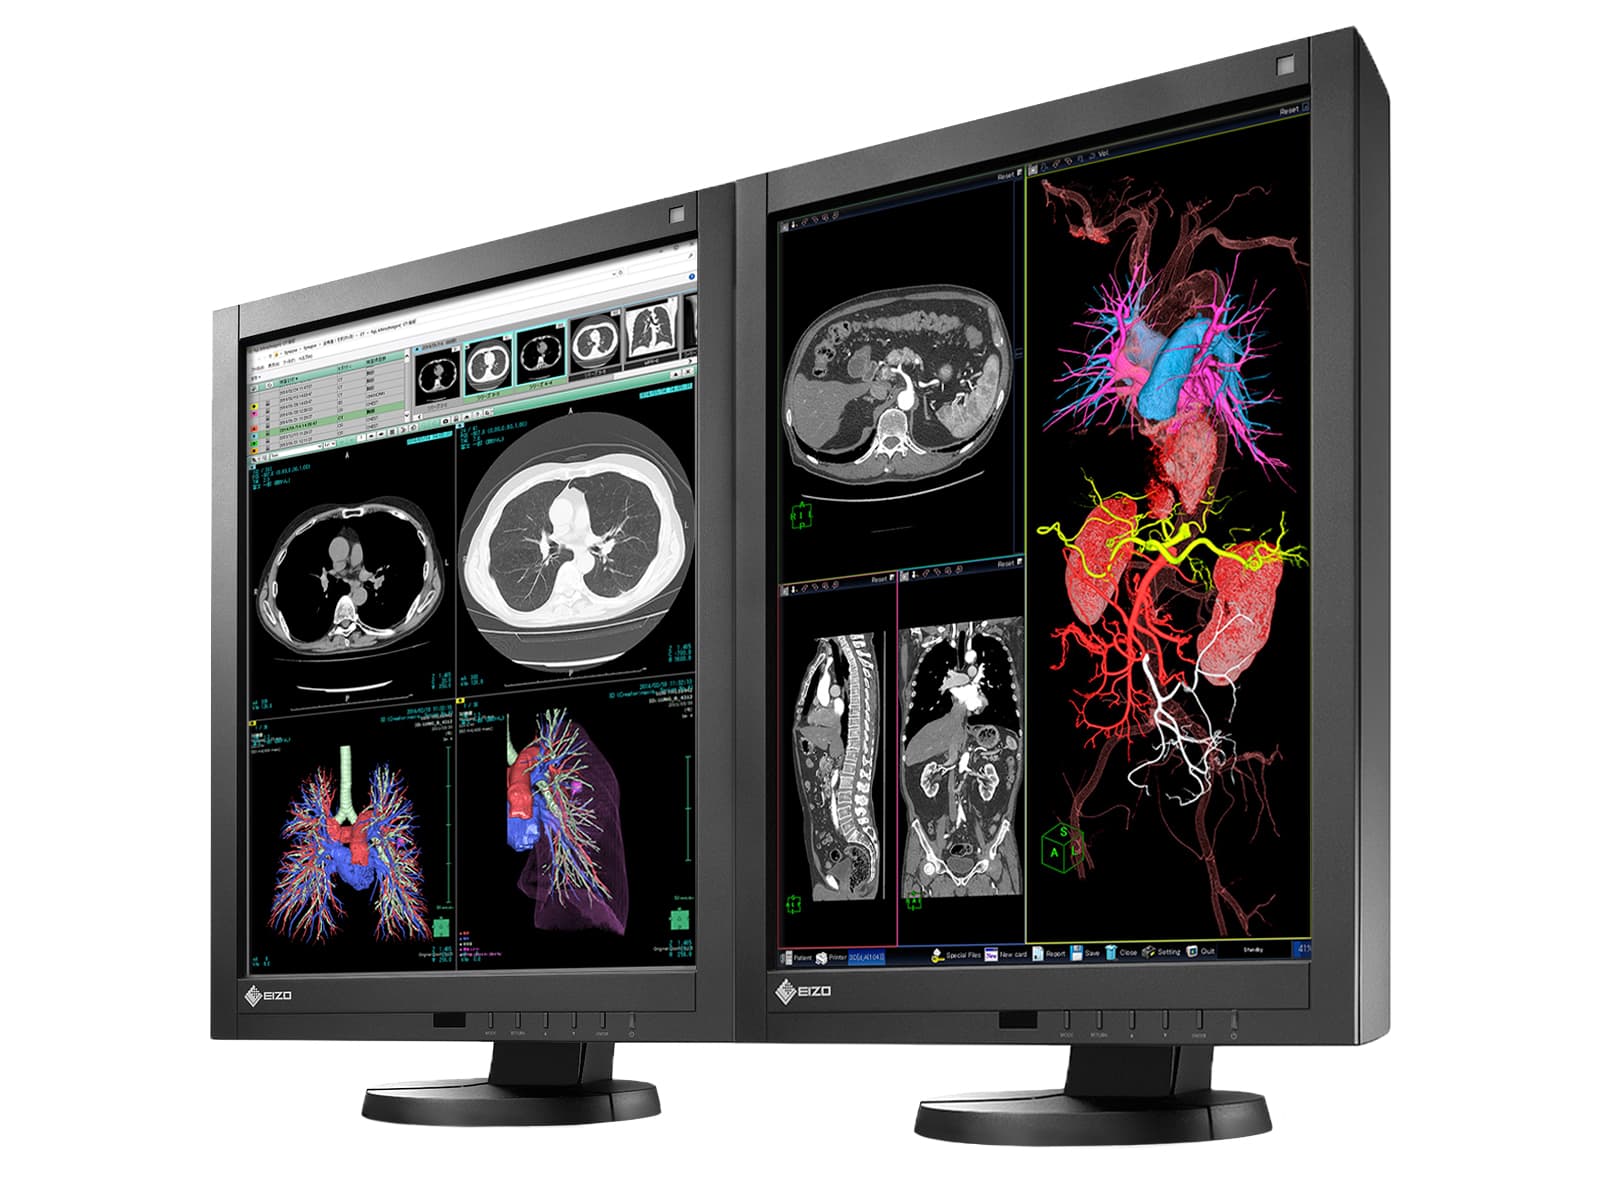 Eizo Radiforce RX240 2MP 21" Color LED General Radiology Diagnostic PACS Display (RX240) Monitors.com 